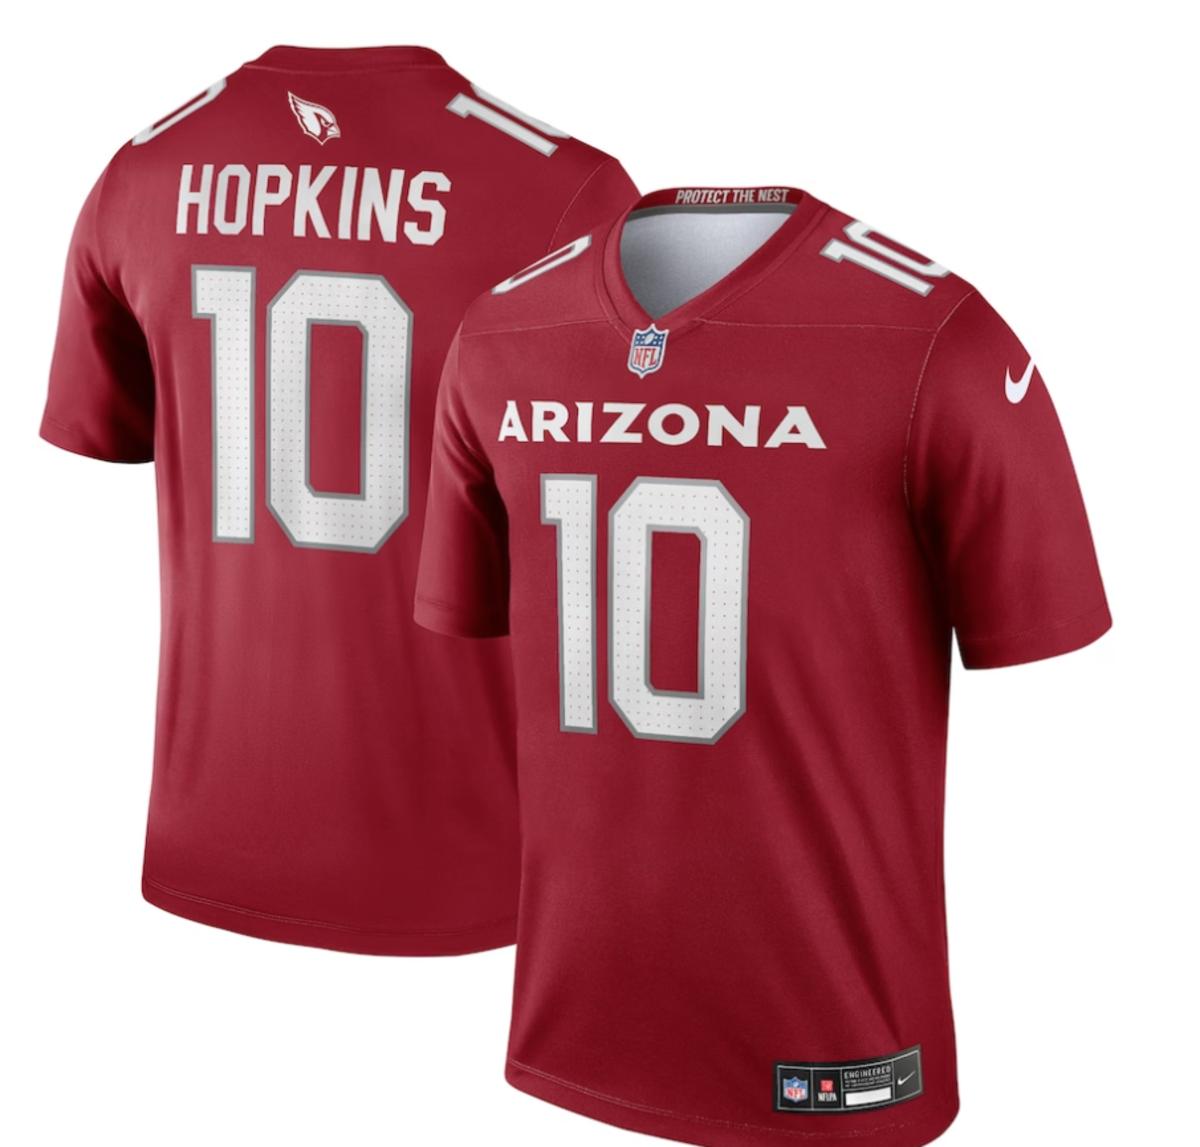 Arizona Cardinals unveil new uniforms, Get your Cardinals' jerseys